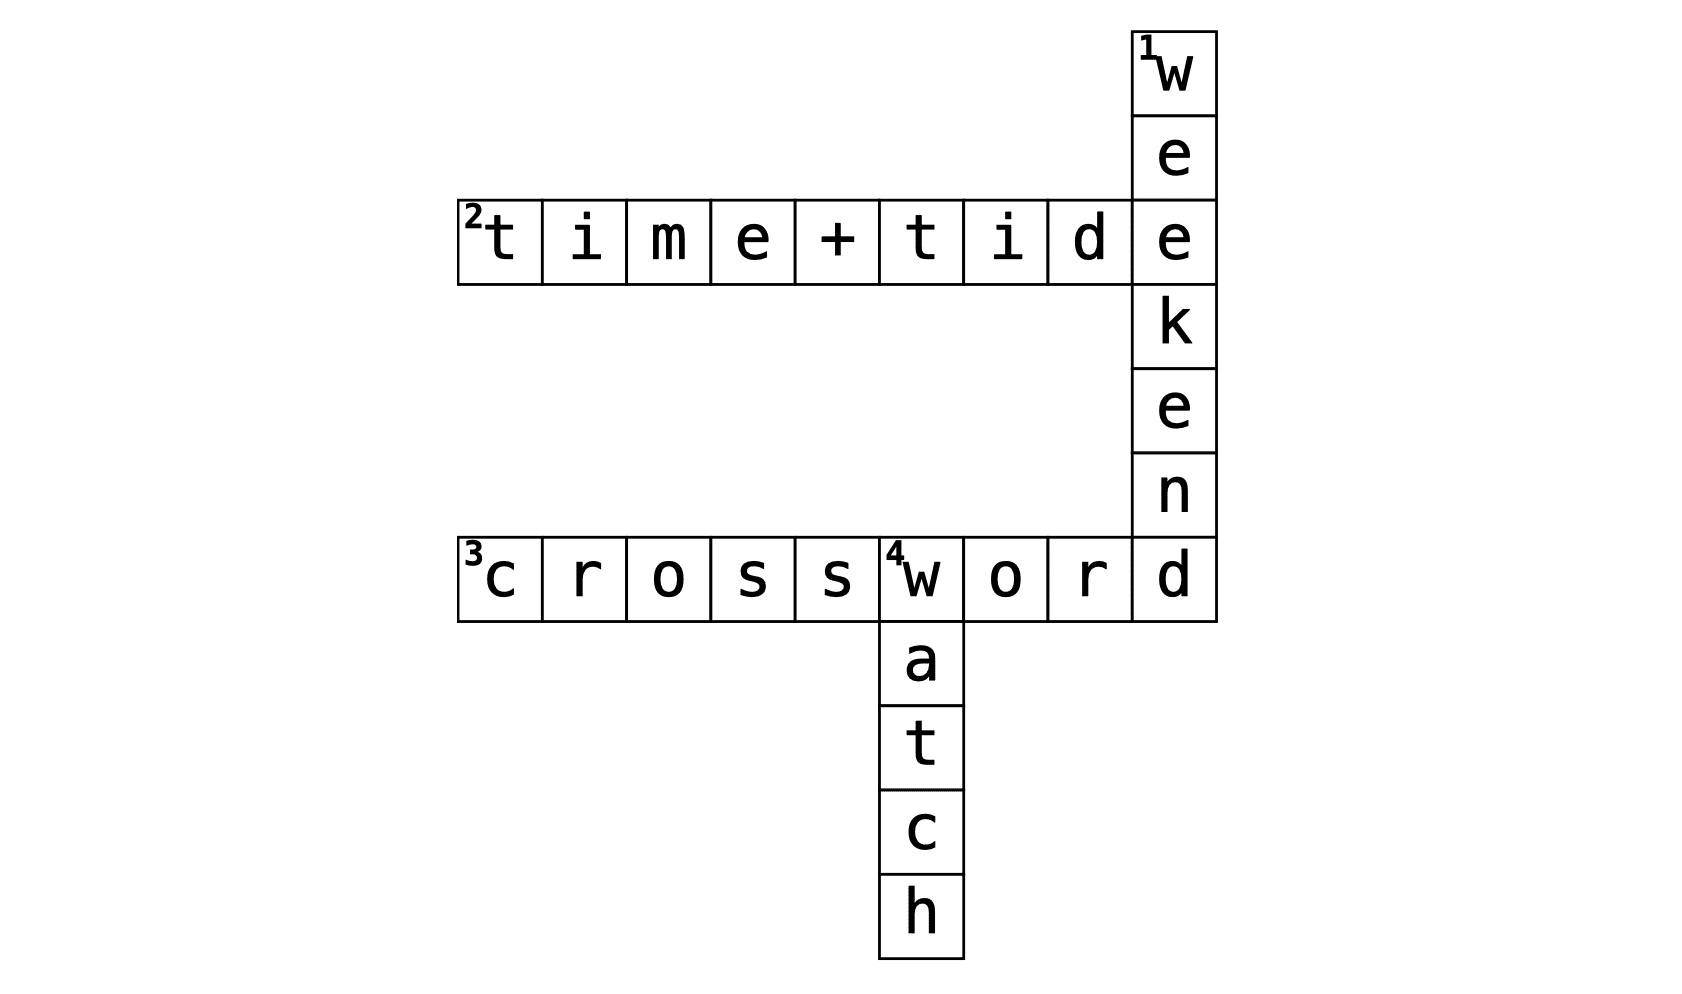 Time+Tide Weekend Watch Crossword: #17 “American Watch Brands”